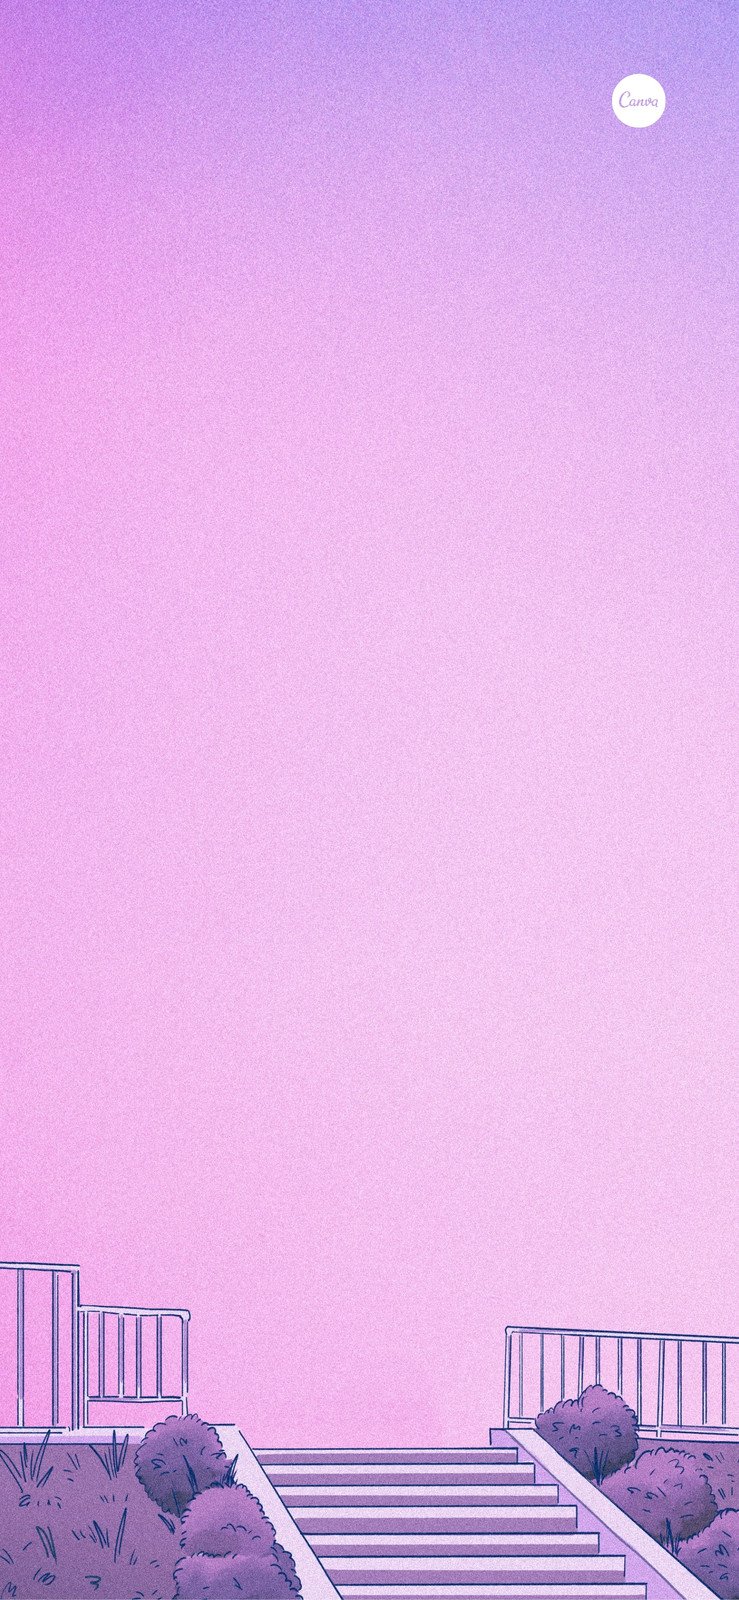 粉紫色日式插画背景阶梯手绘分享新手机壁纸 模板 Canva可画